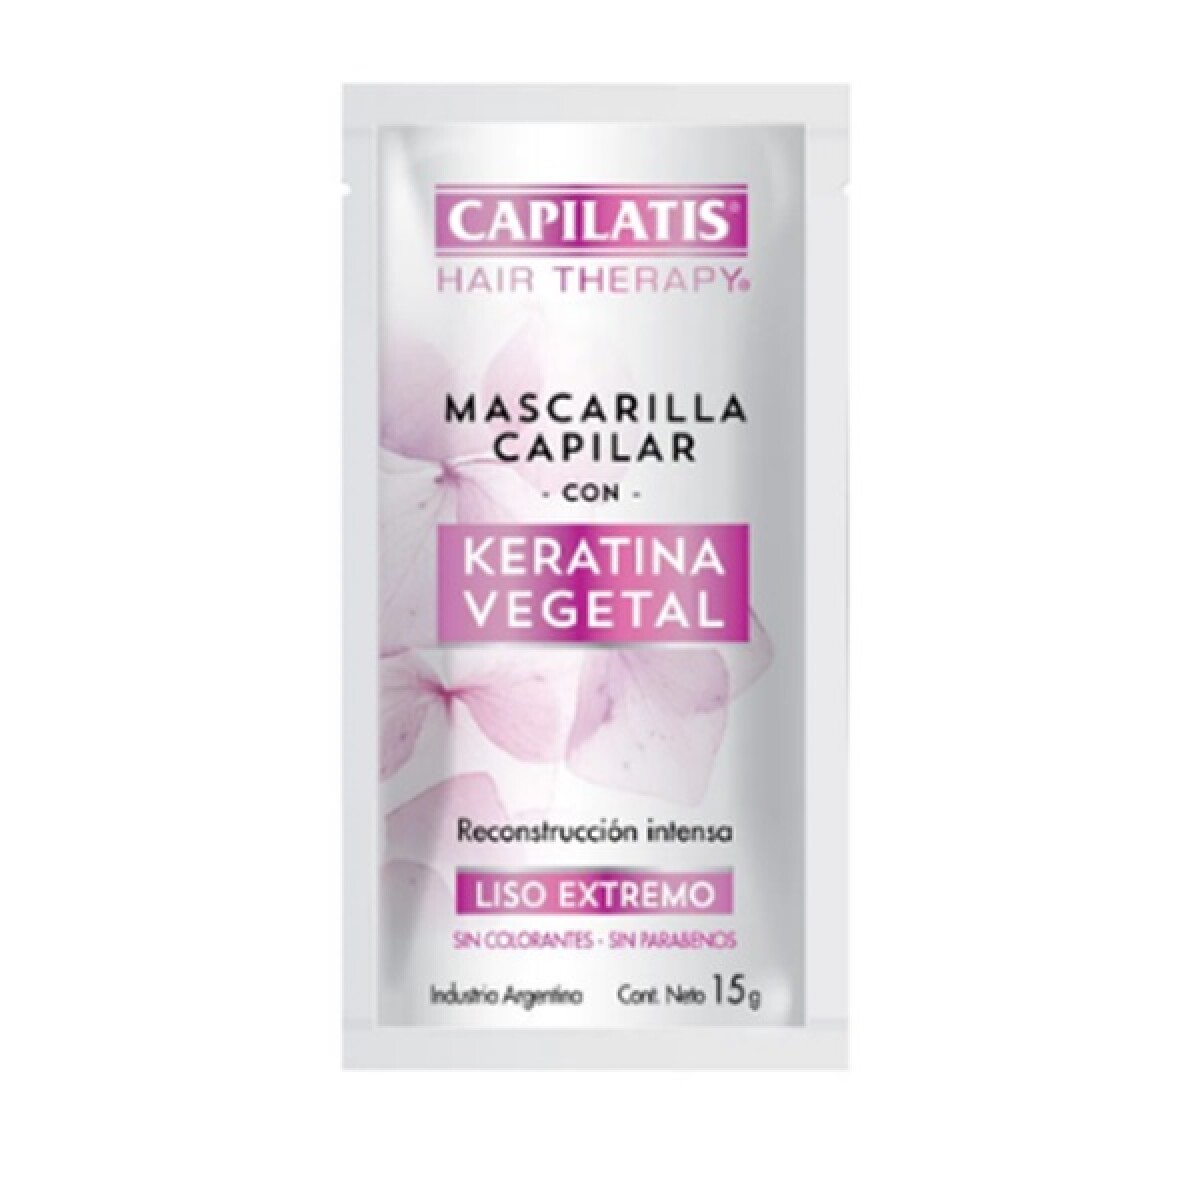 Mascarilla Capilar Capilatis Con Keratina 15 Grs. 